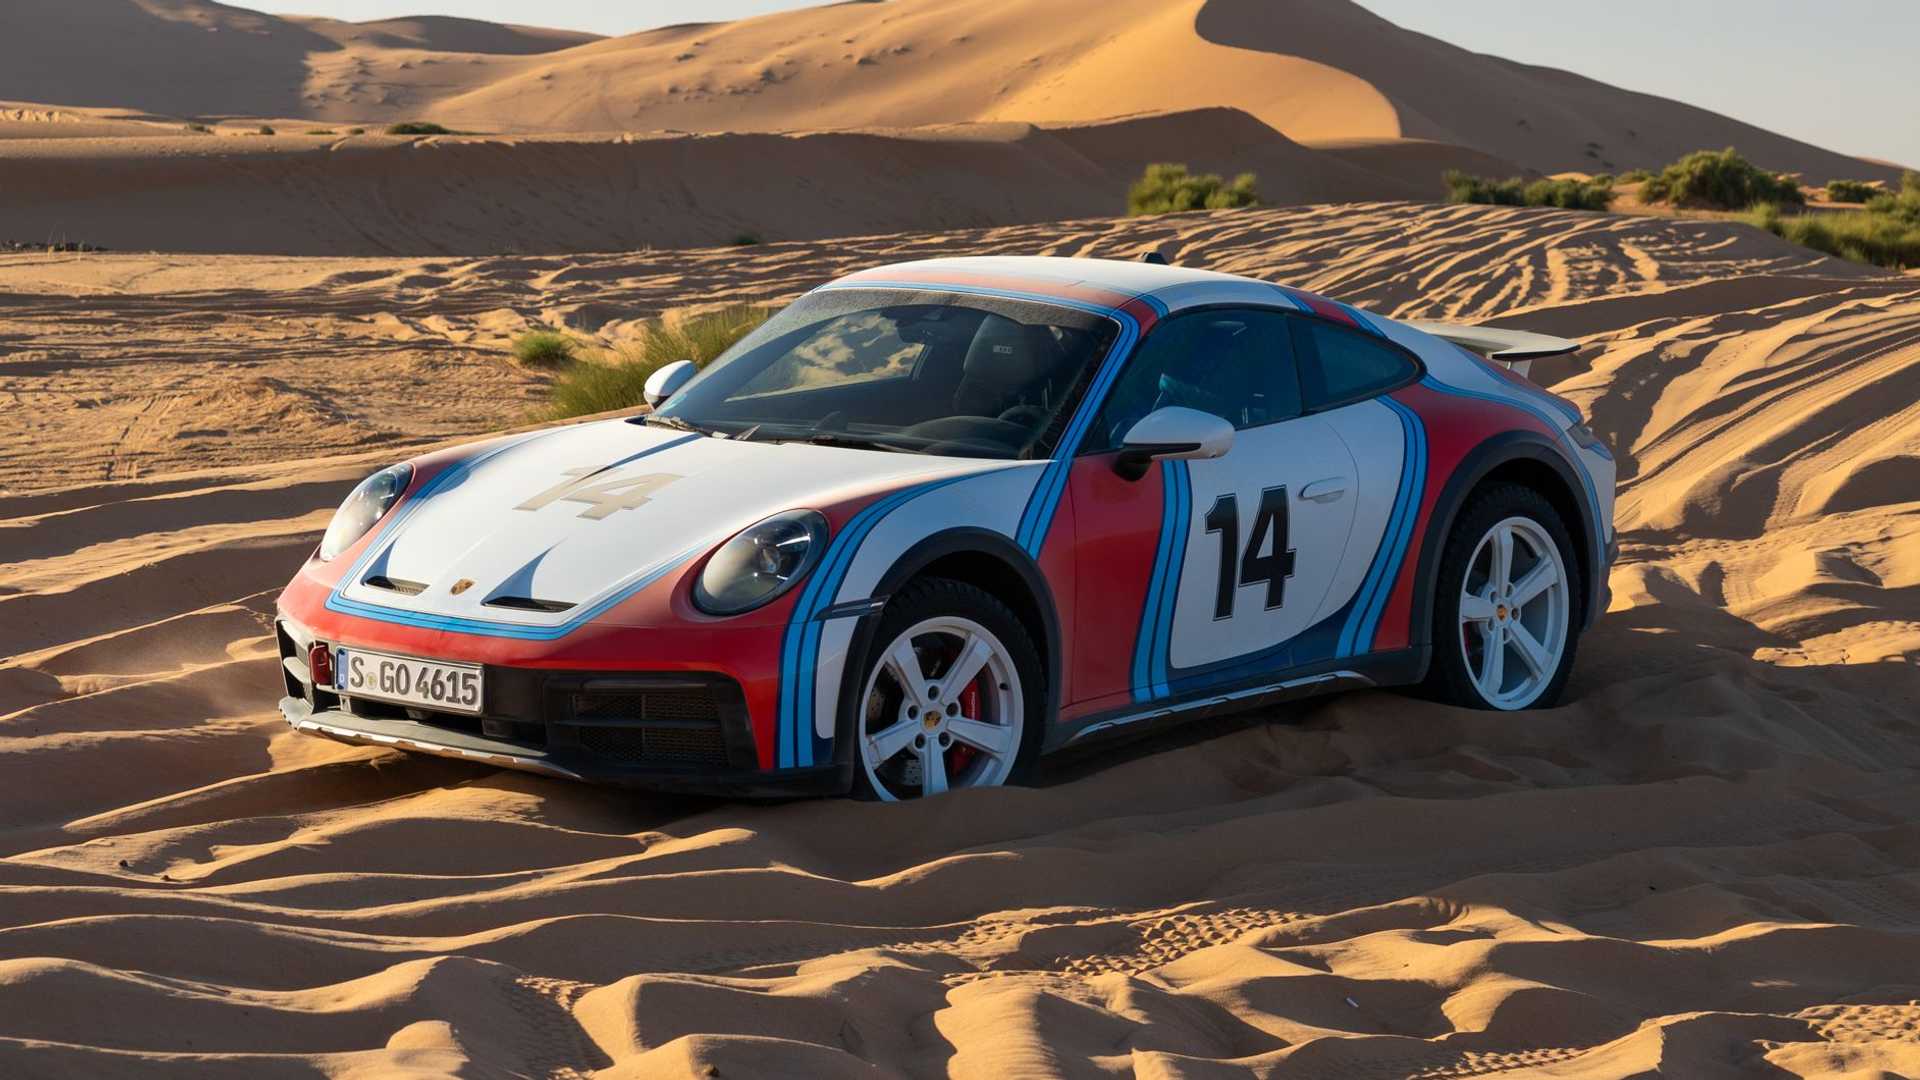 Porsche 911 Dakar thứ 3 về Việt Nam, chủ xe là chuyên gia tài chính nổi tiếng porsche-911-dakar-autodaily-3.jpg